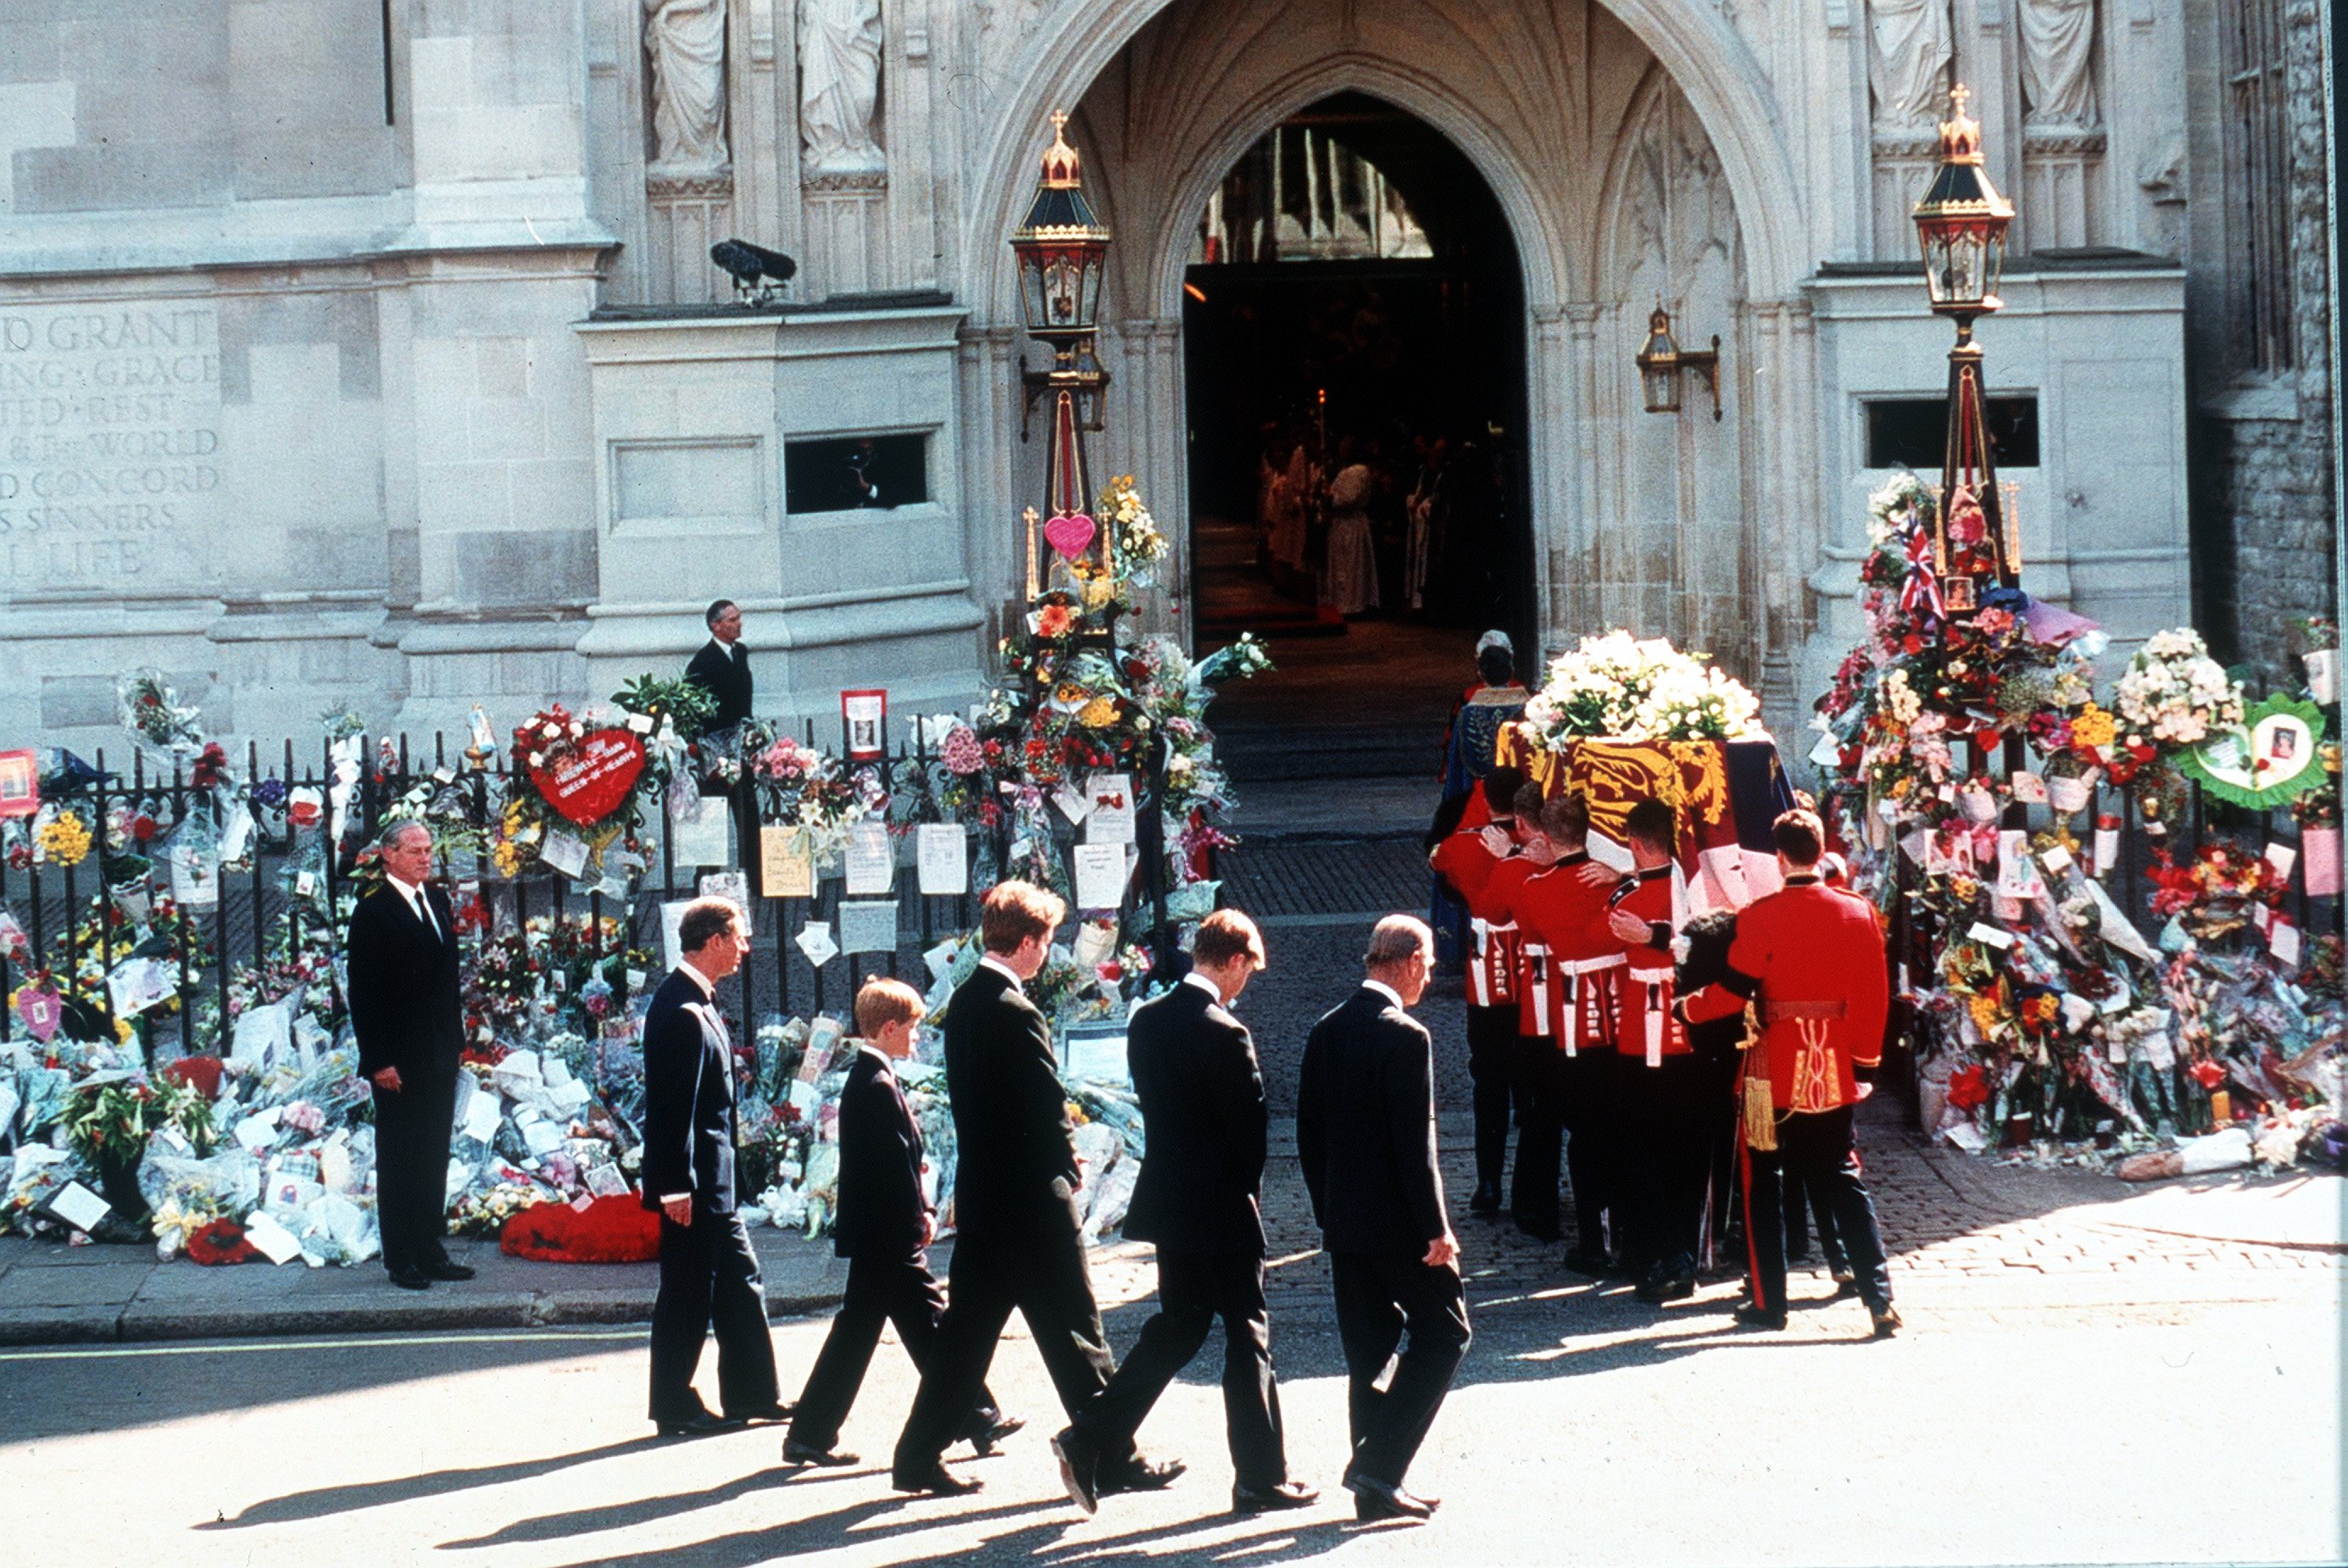 El conde Spencer, el príncipe William, el príncipe Harry, el príncipe Charles y el duque de Edimburgo siguiendo el ataúd de la princesa Diana en su cortejo fúnebre, en la Abadía de Westminster, el 6 de septiembre de 1997 en Londres, Inglaterra. | Foto: Getty Images